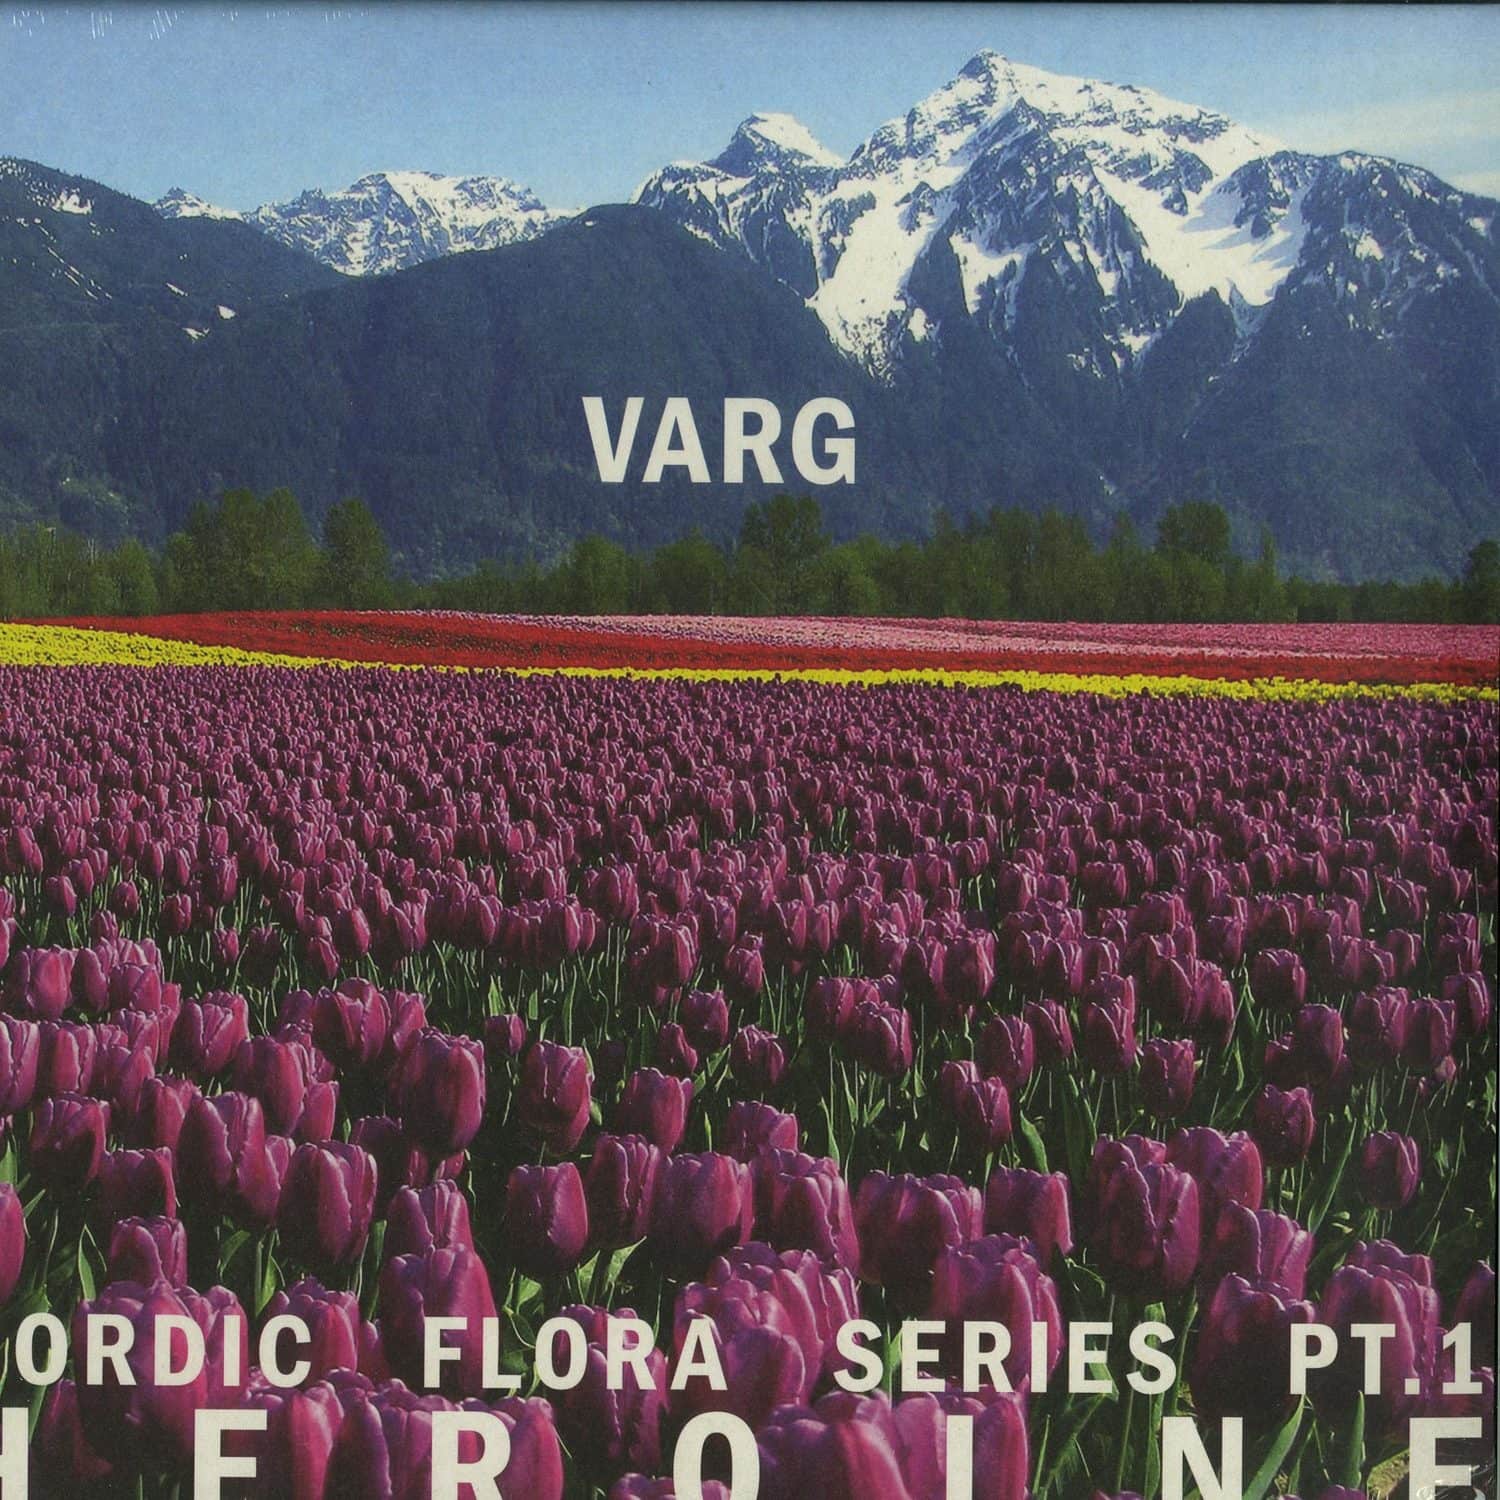 Varg - NORDIC FLORA SERIES PT.1: HEROINE